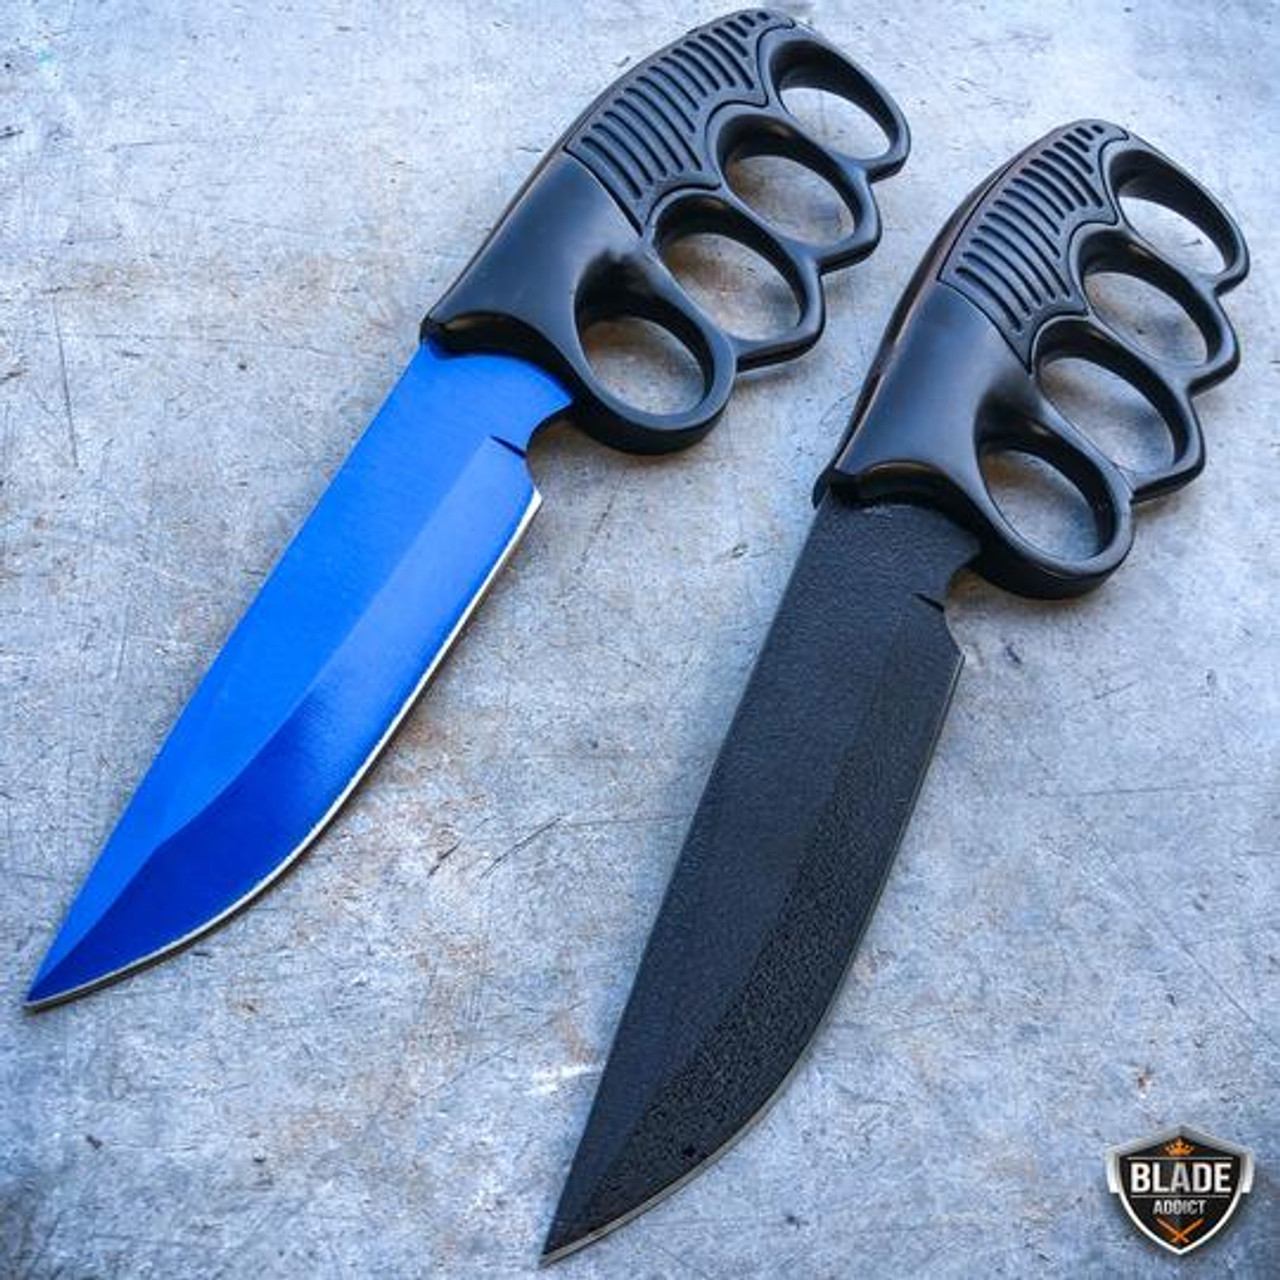 Megaknife Blue Tactical Knife Set 